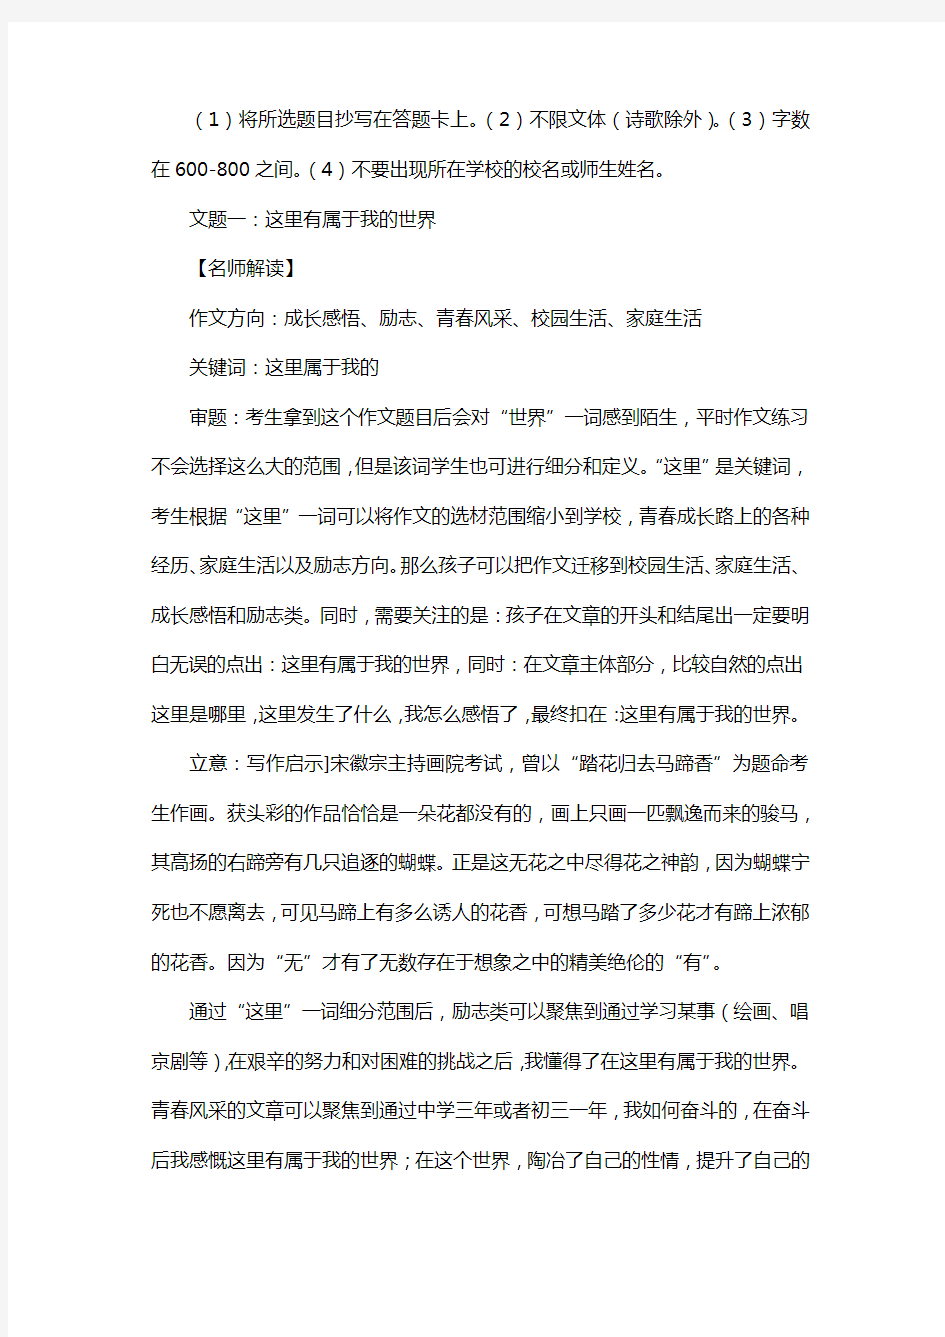 2014年全国中考满分作文(北京、18篇)：这里有属于我的世界(15篇)第7篇